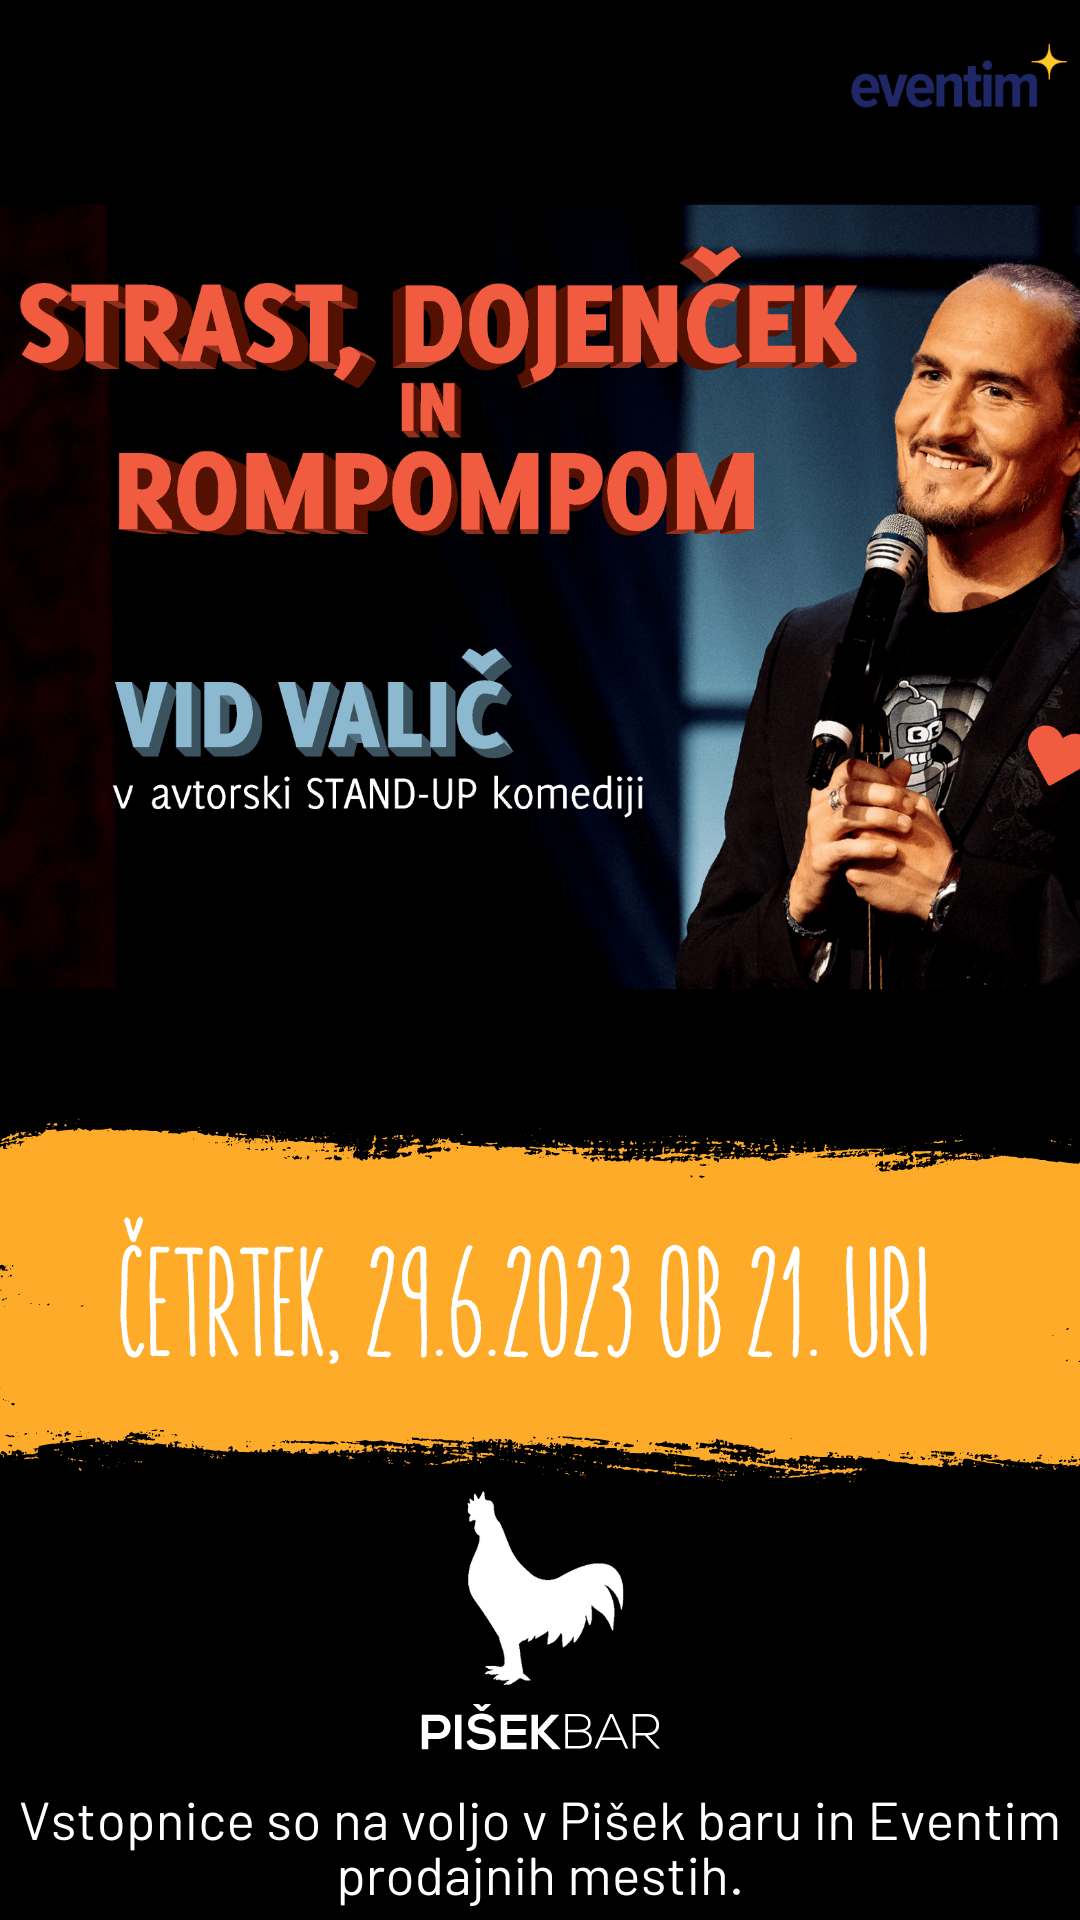 STRAST, DOJENČEK IN ROMPOPOM, Vid Valič v avtorski stand-up komediji